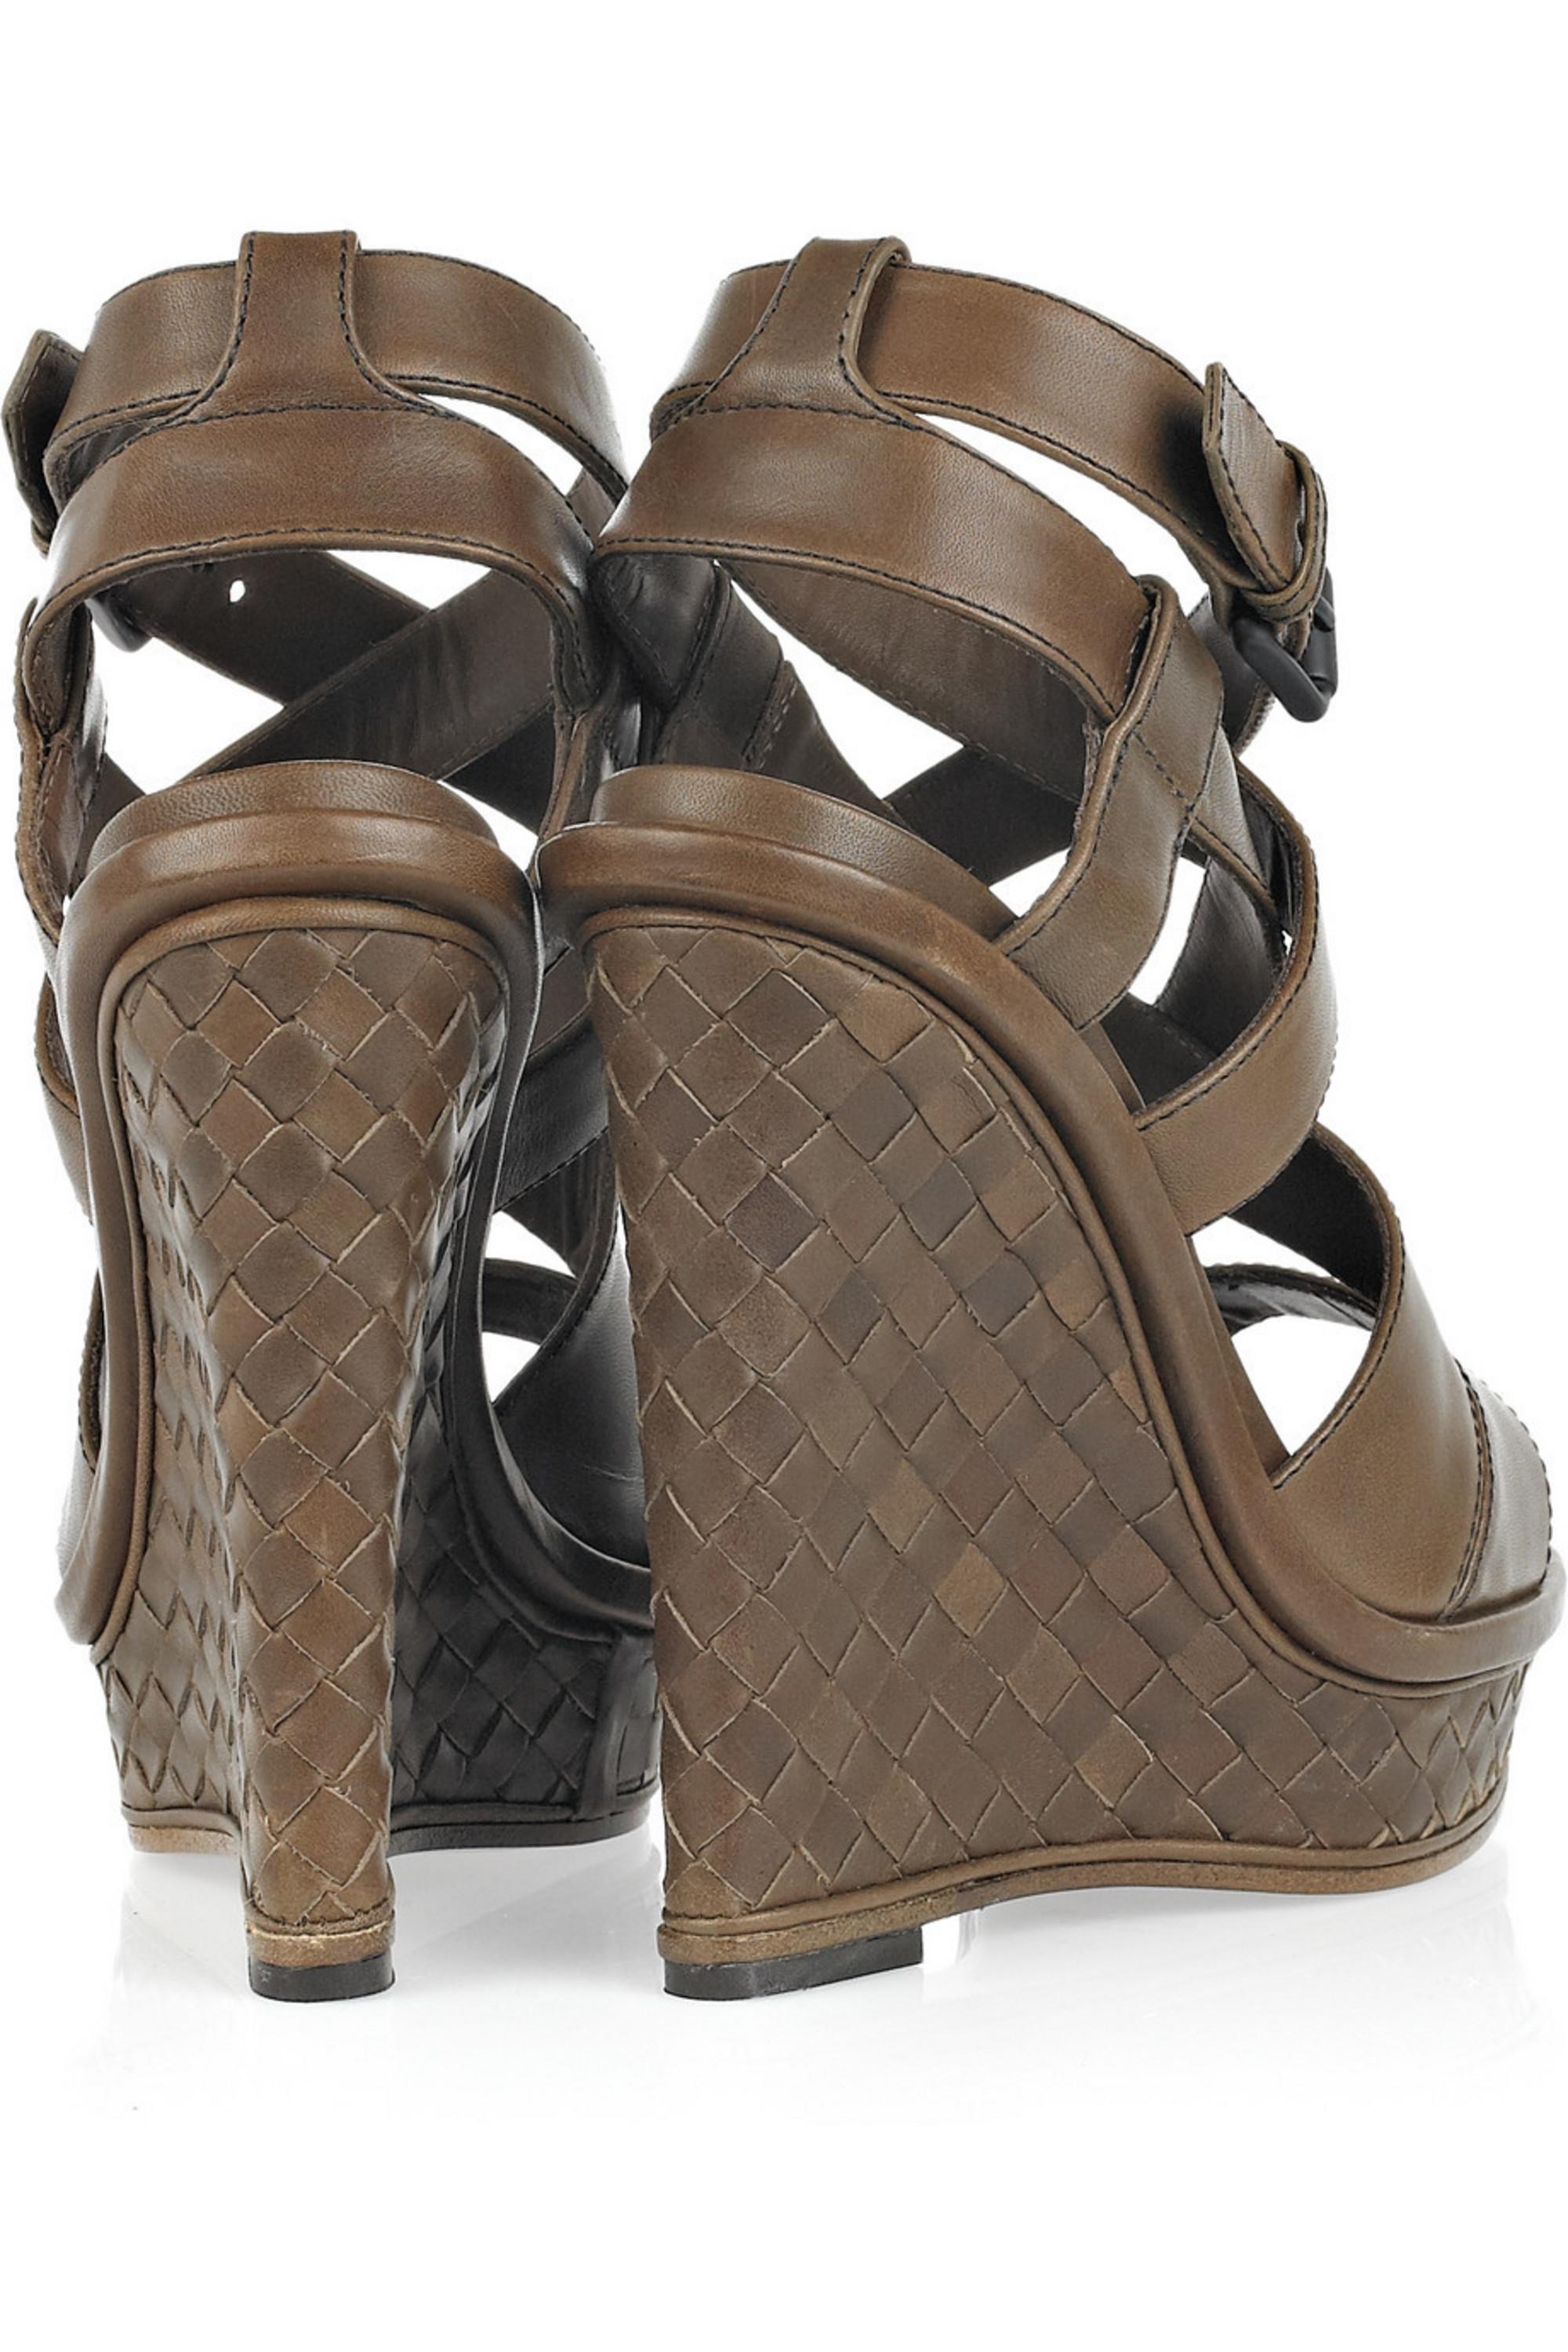 dark brown wedge sandals